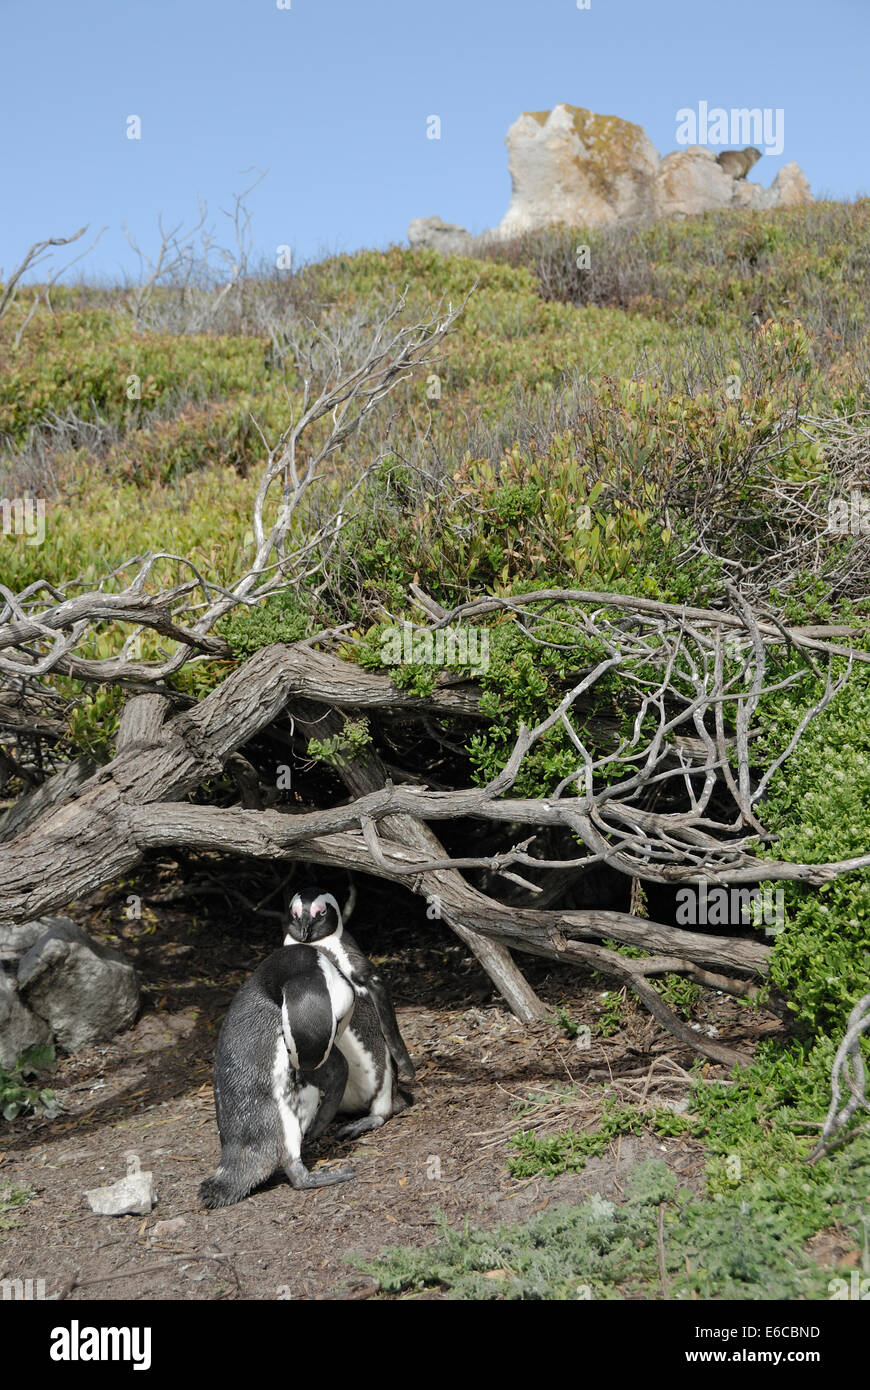 Couple de pingouins Jackass à pieds noirs (Speniscus demersus), Betty's Bay, South Western Cape, Afrique du Sud Banque D'Images